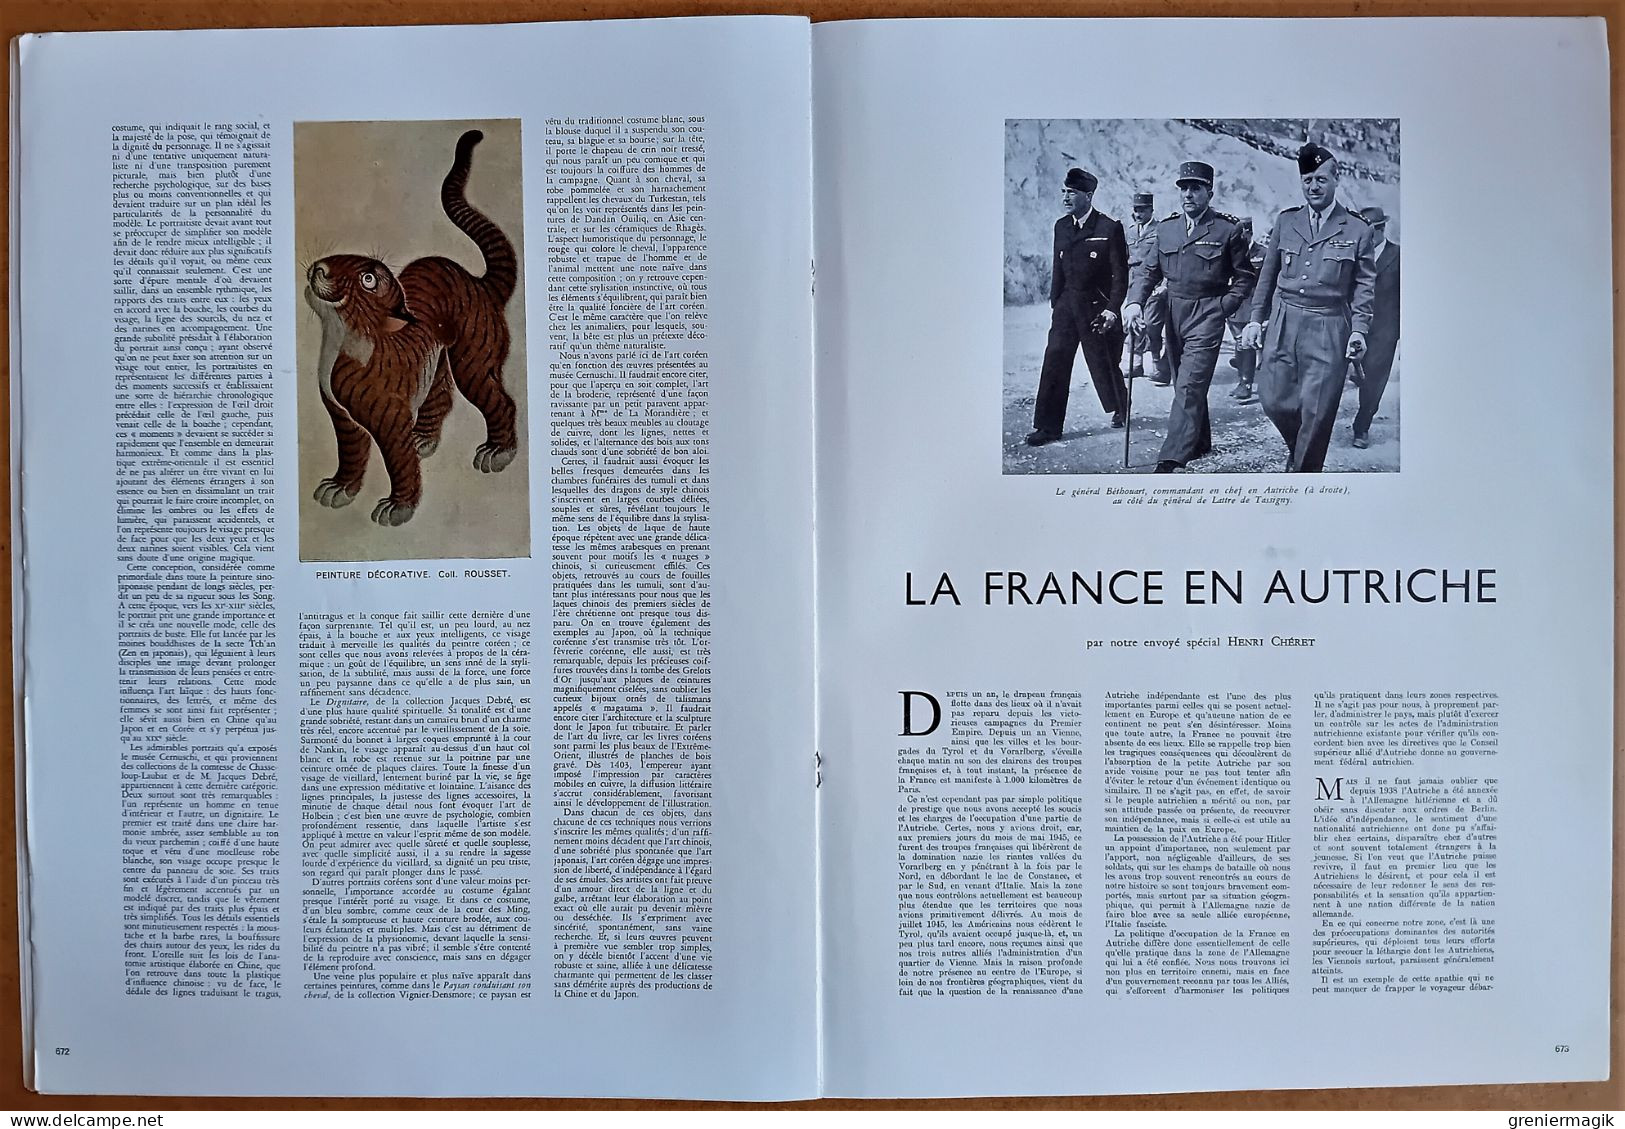 France Illustration 37 15/06/1946 Exécution des tortionnaires du Camp de Dachau/Art coréen/La France en Autriche/Narvik